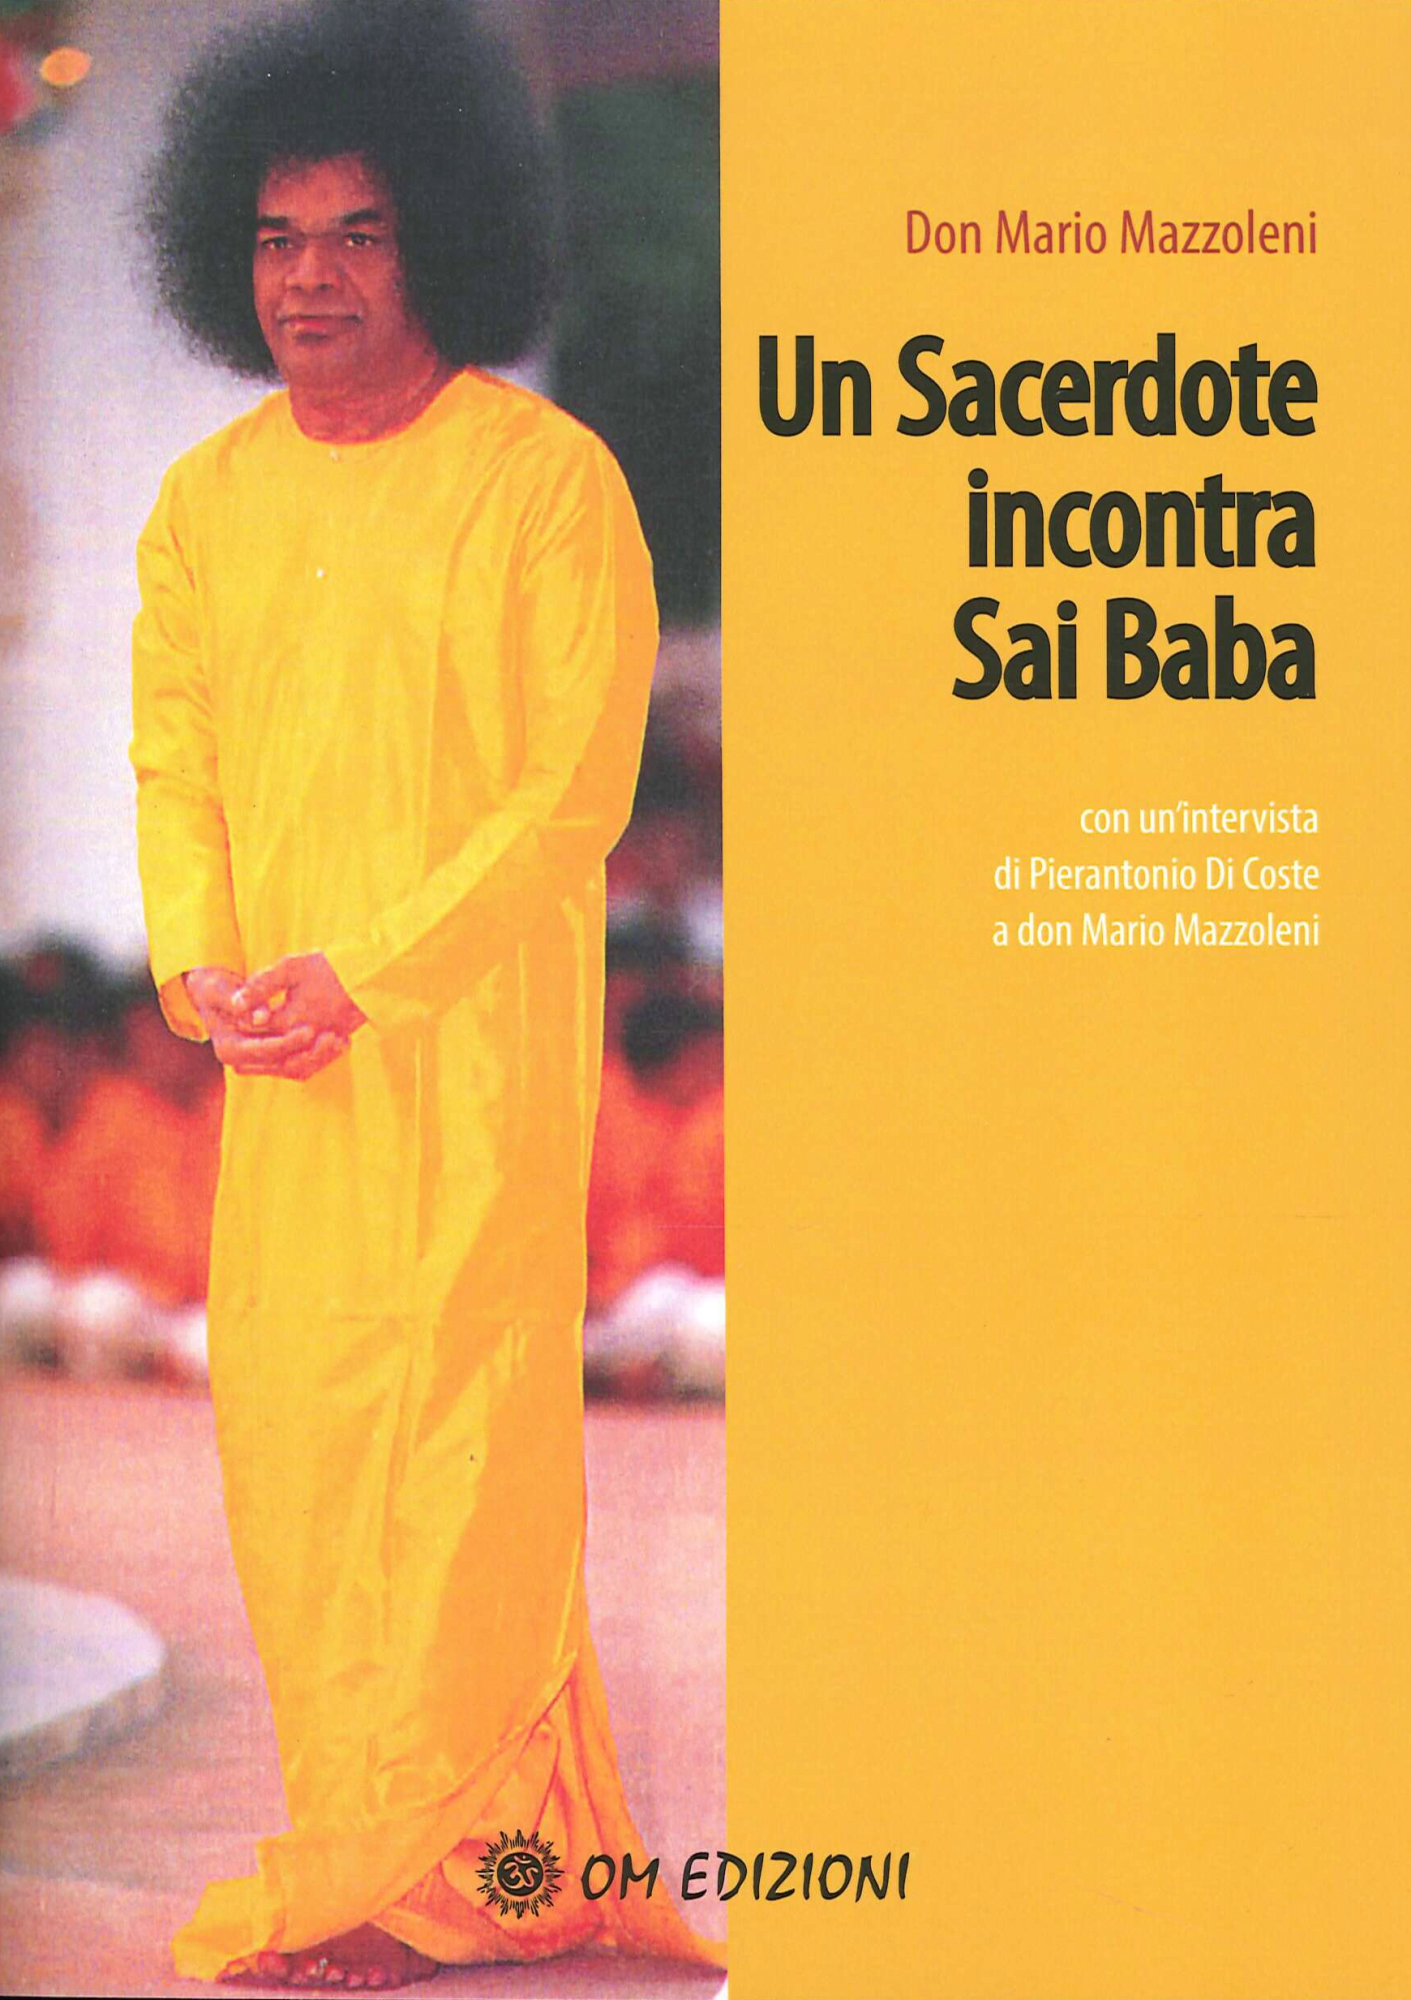 Libri Mario Mazzoleni - Un Sacerdote Incontra Sai Baba NUOVO SIGILLATO, EDIZIONE DEL 30/07/2020 SUBITO DISPONIBILE